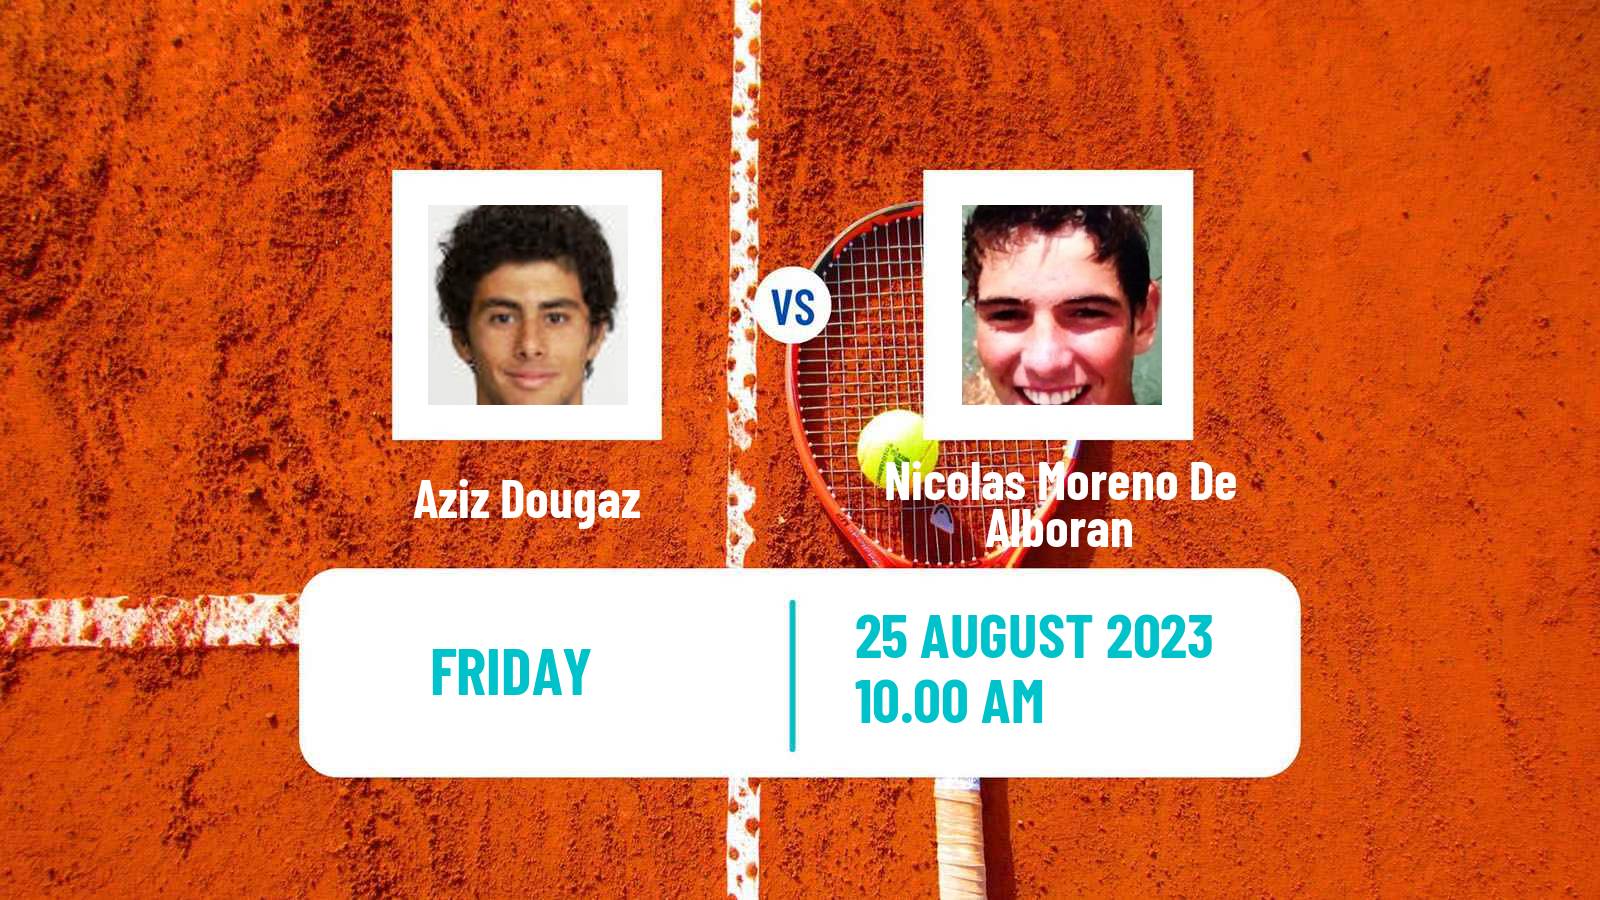 Tennis ATP US Open Aziz Dougaz - Nicolas Moreno De Alboran